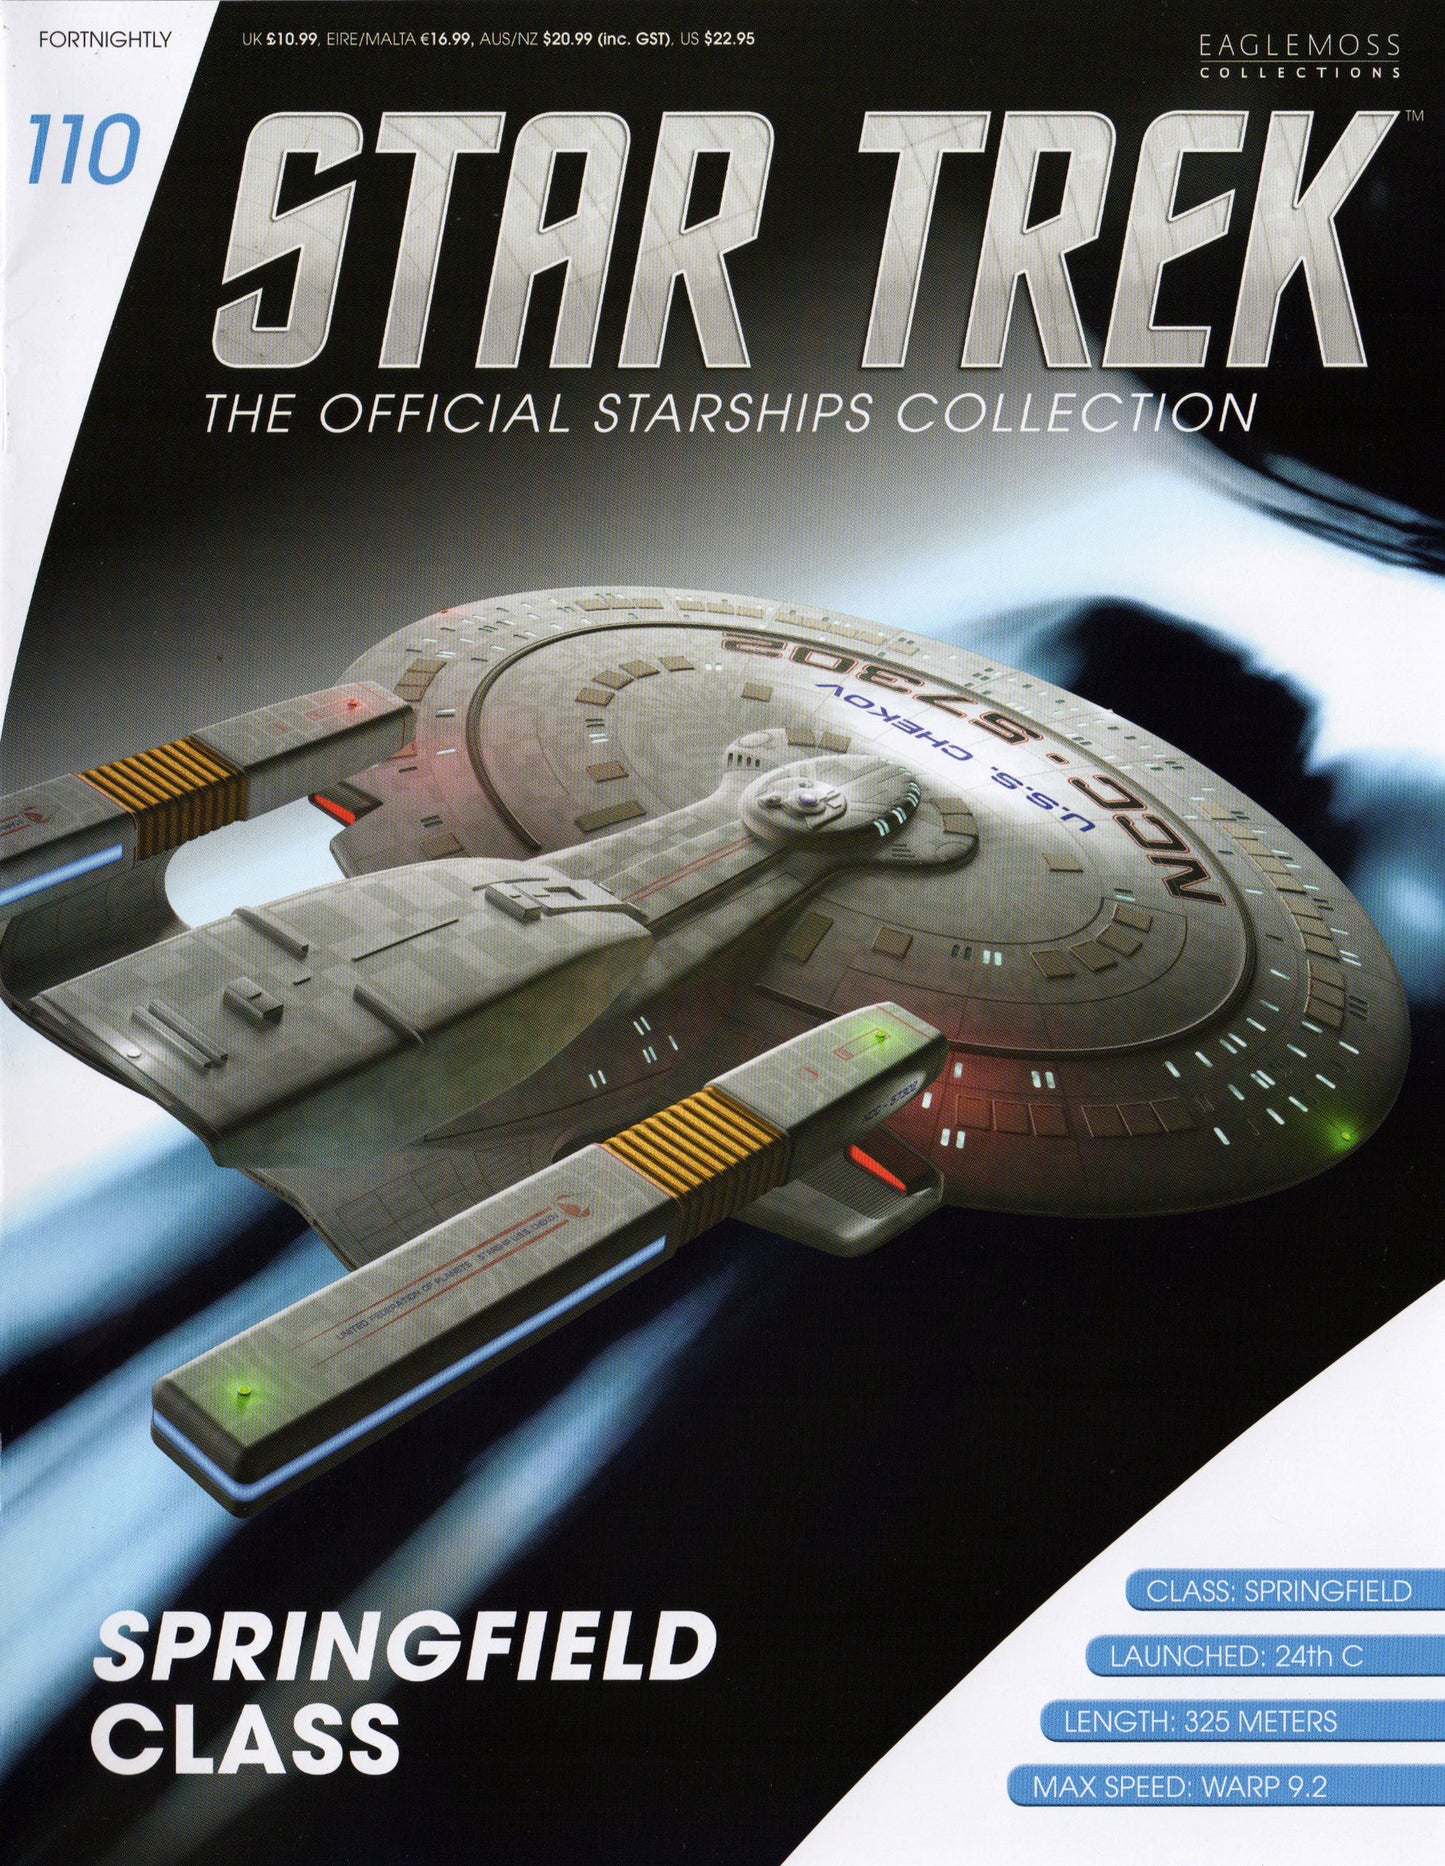 #110 USS Chekov Springfield Classe Modèle Die Cast Navire Star Trek